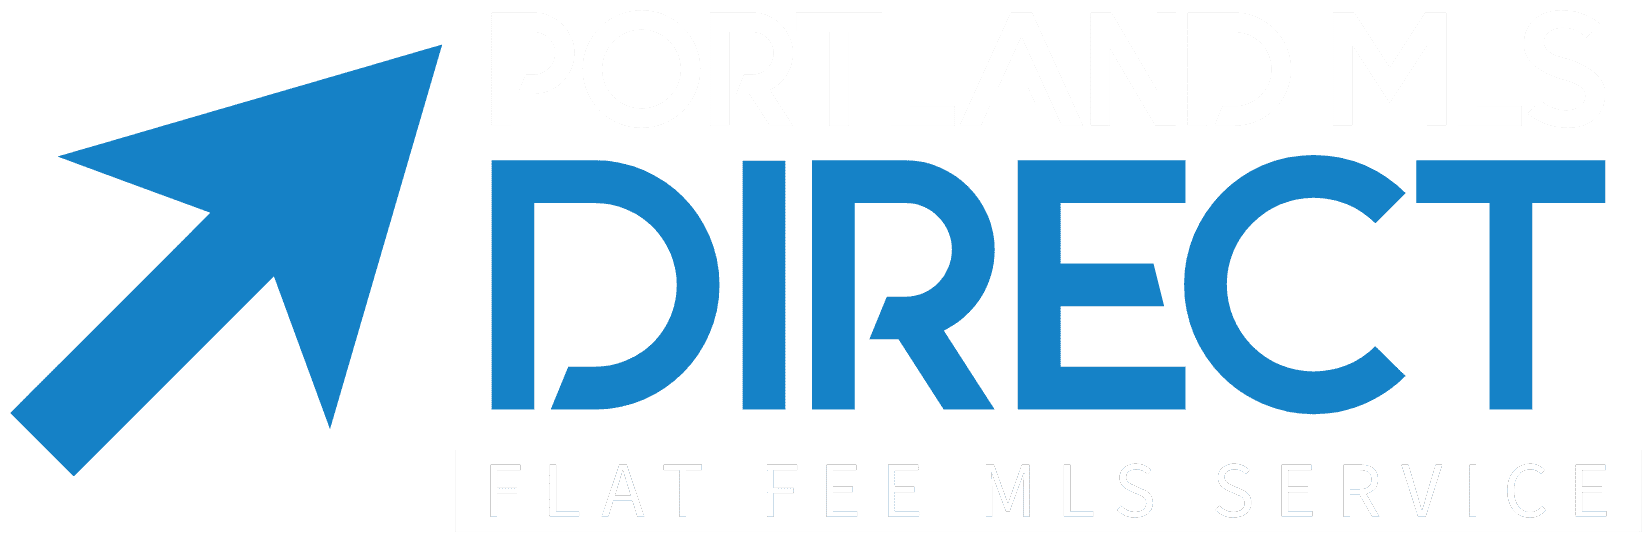 Portland MLS Direct - Flat Fee MLS